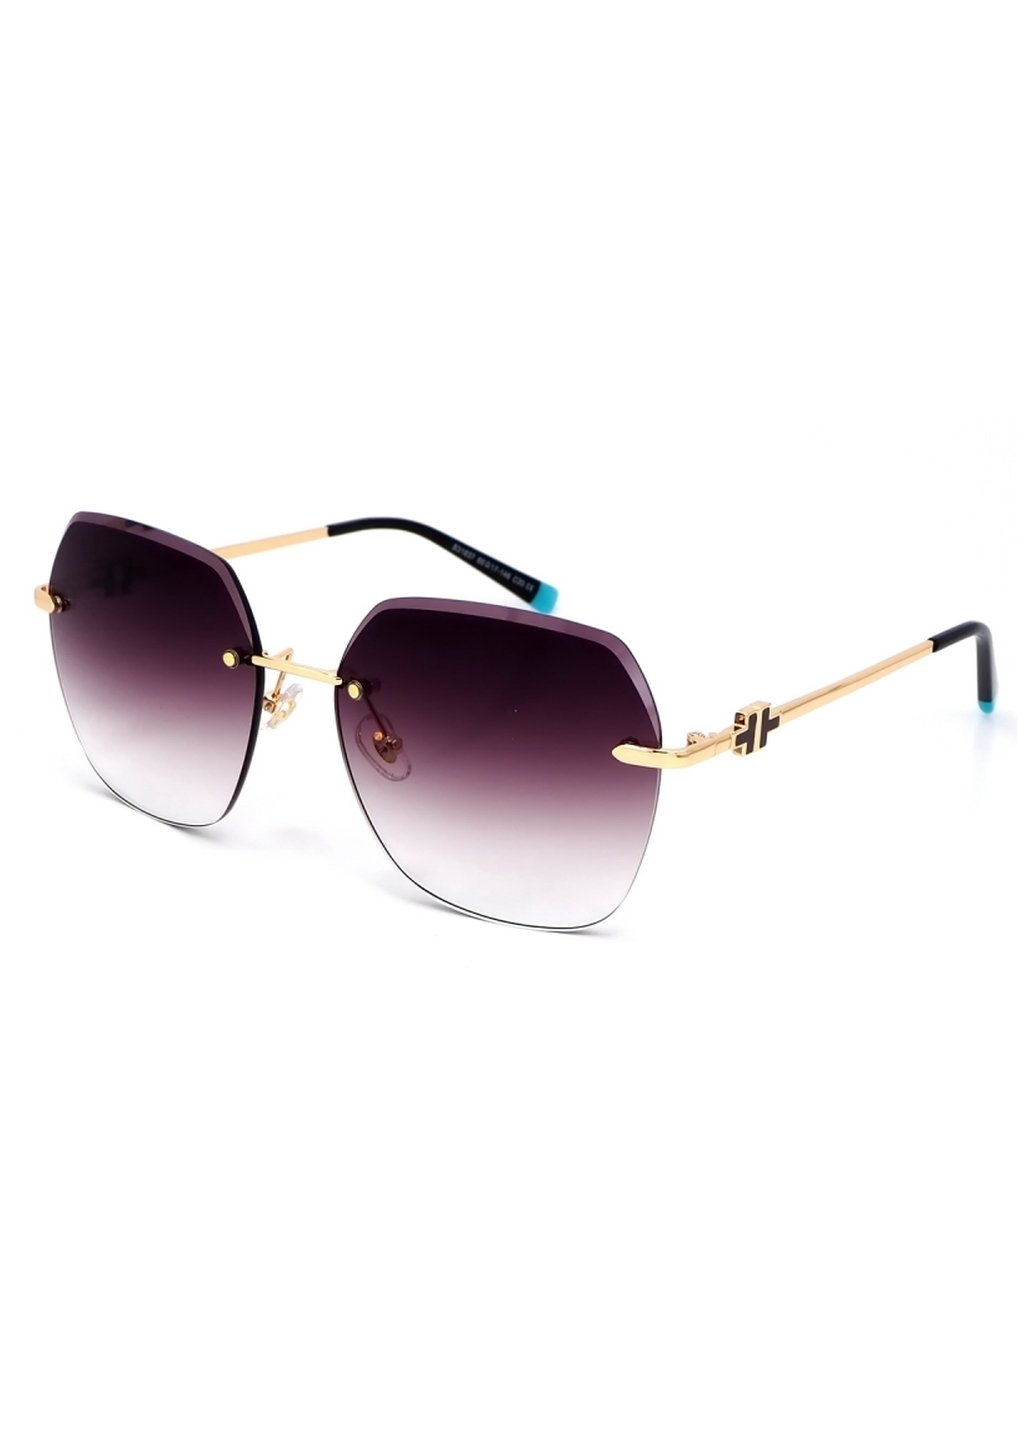 Купить Женские солнцезащитные очки Merlini с поляризацией S31837 117099 - Золотистый в интернет-магазине